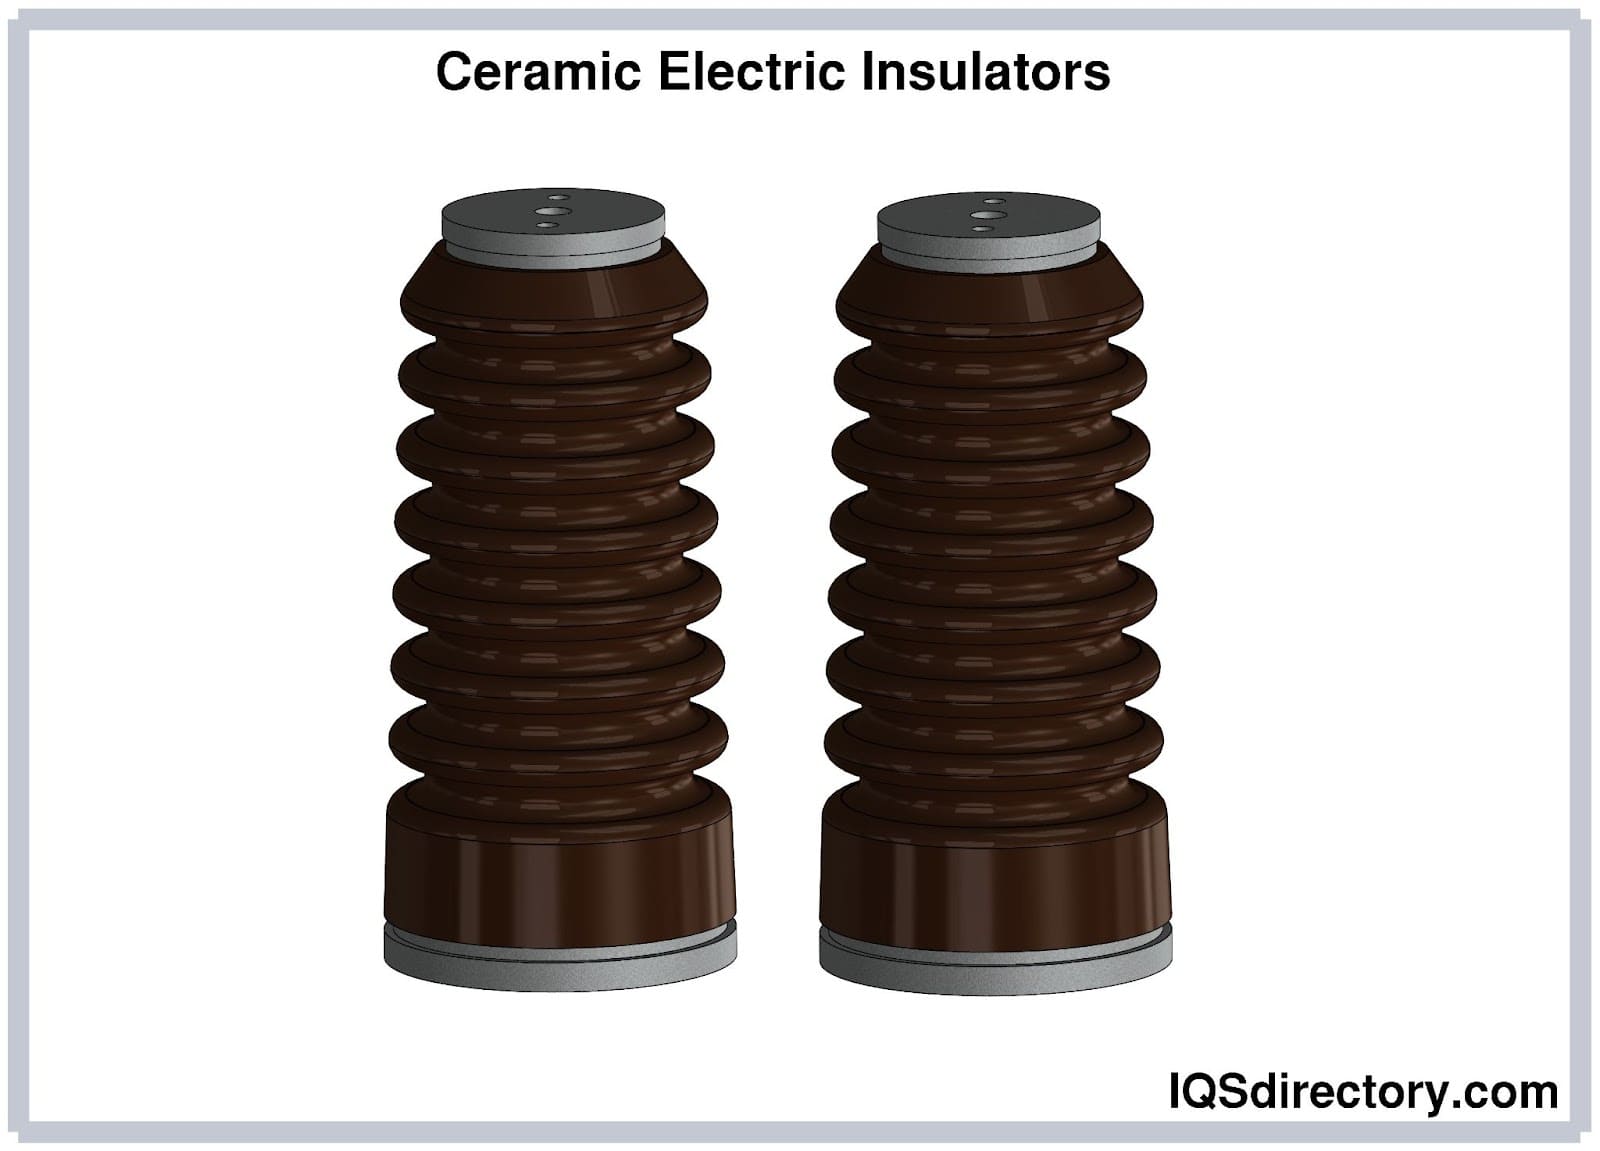 Ceramic Electric Insulators